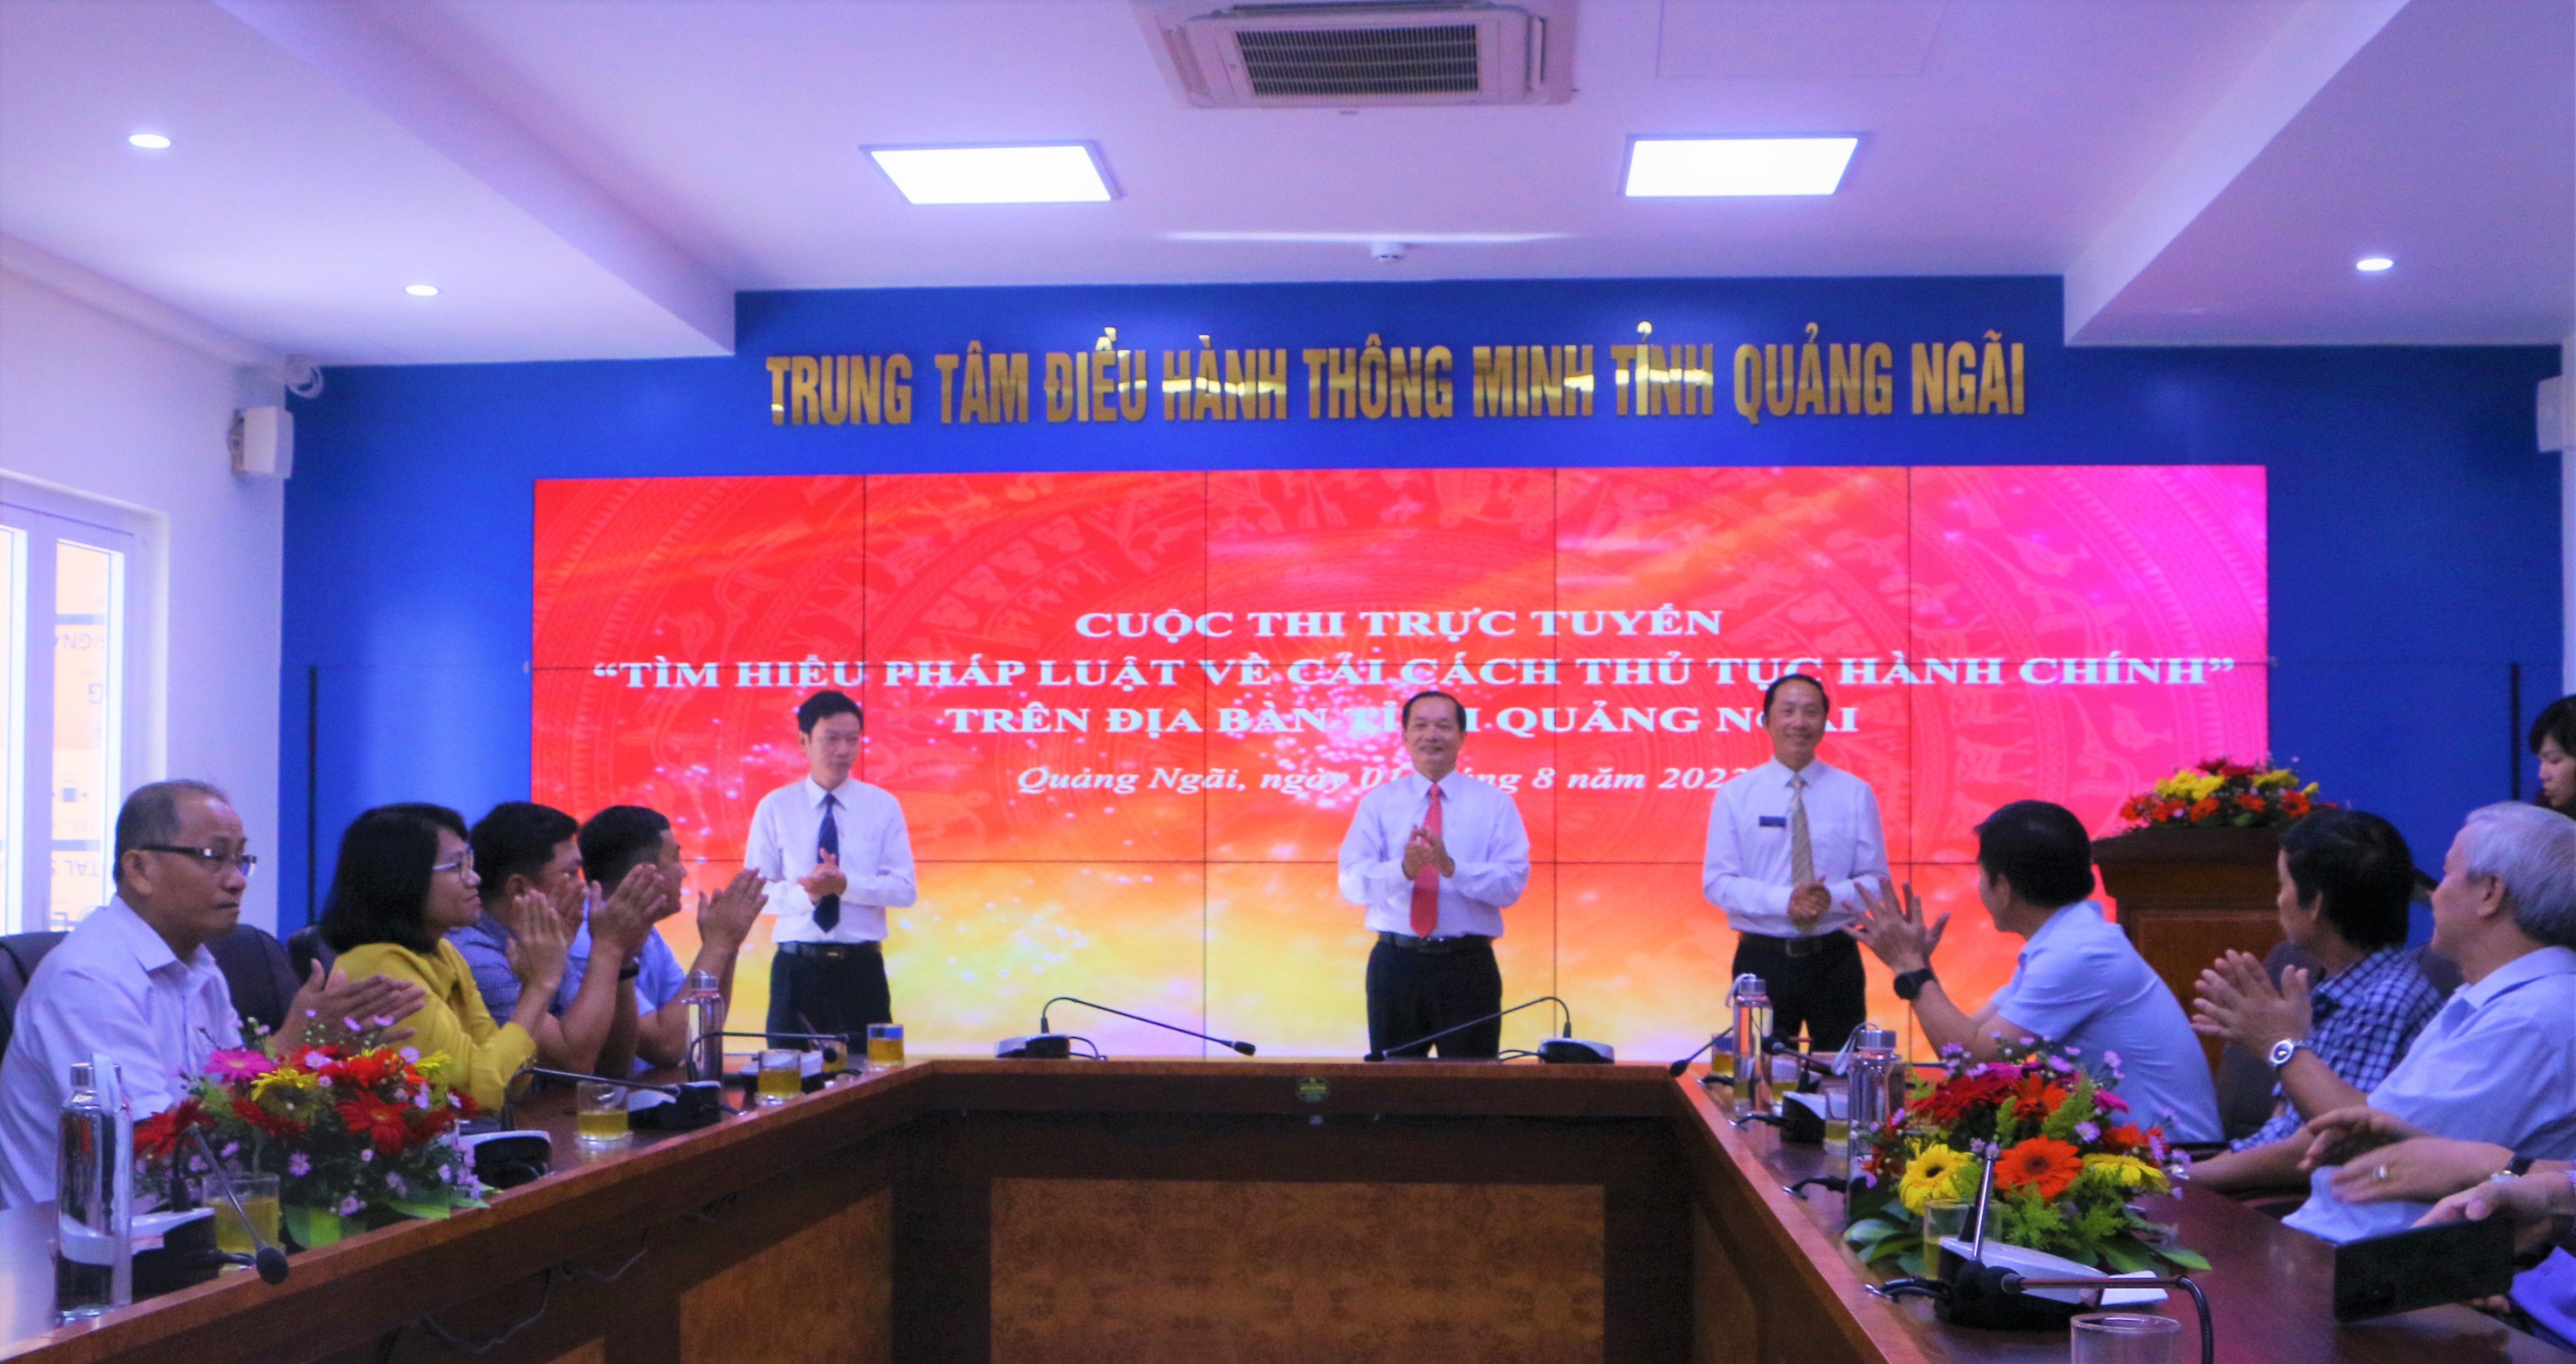 Phát động cuộc thi trực tuyến “Tìm hiểu pháp luật về cải cách thủ tục hành chính” trên địa bàn tỉnh Quảng Ngãi năm 2022